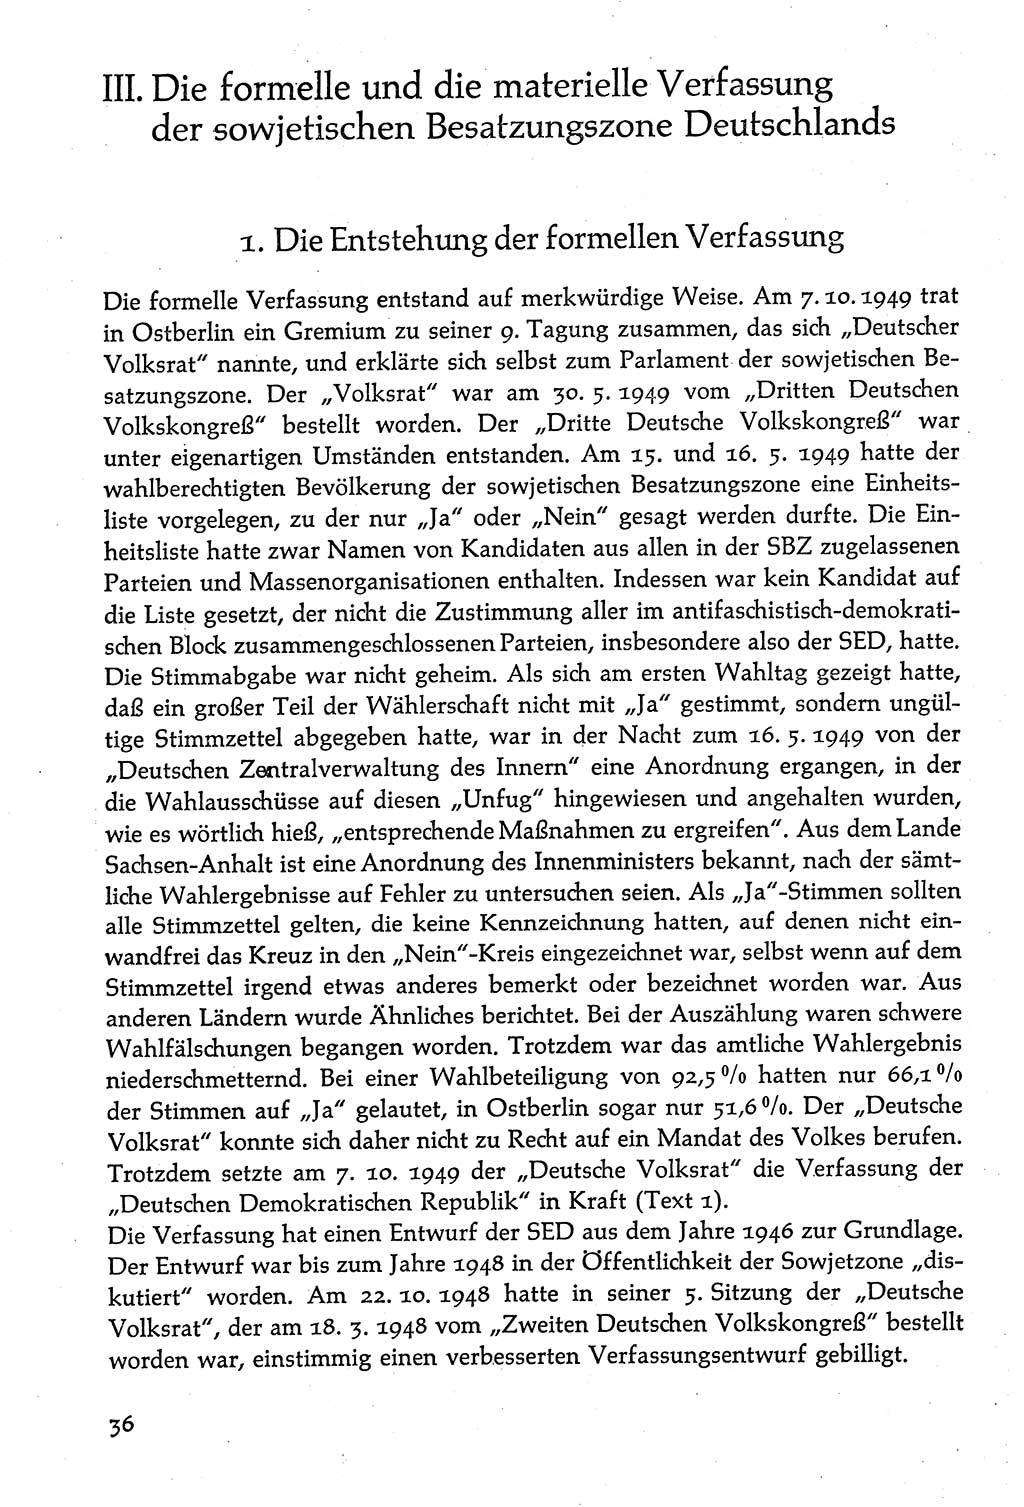 Volksdemokratische Ordnung in Mitteldeutschland [Deutsche Demokratische Republik (DDR)], Texte zur verfassungsrechtlichen Situation 1963, Seite 36 (Volksdem. Ordn. Md. DDR 1963, S. 36)